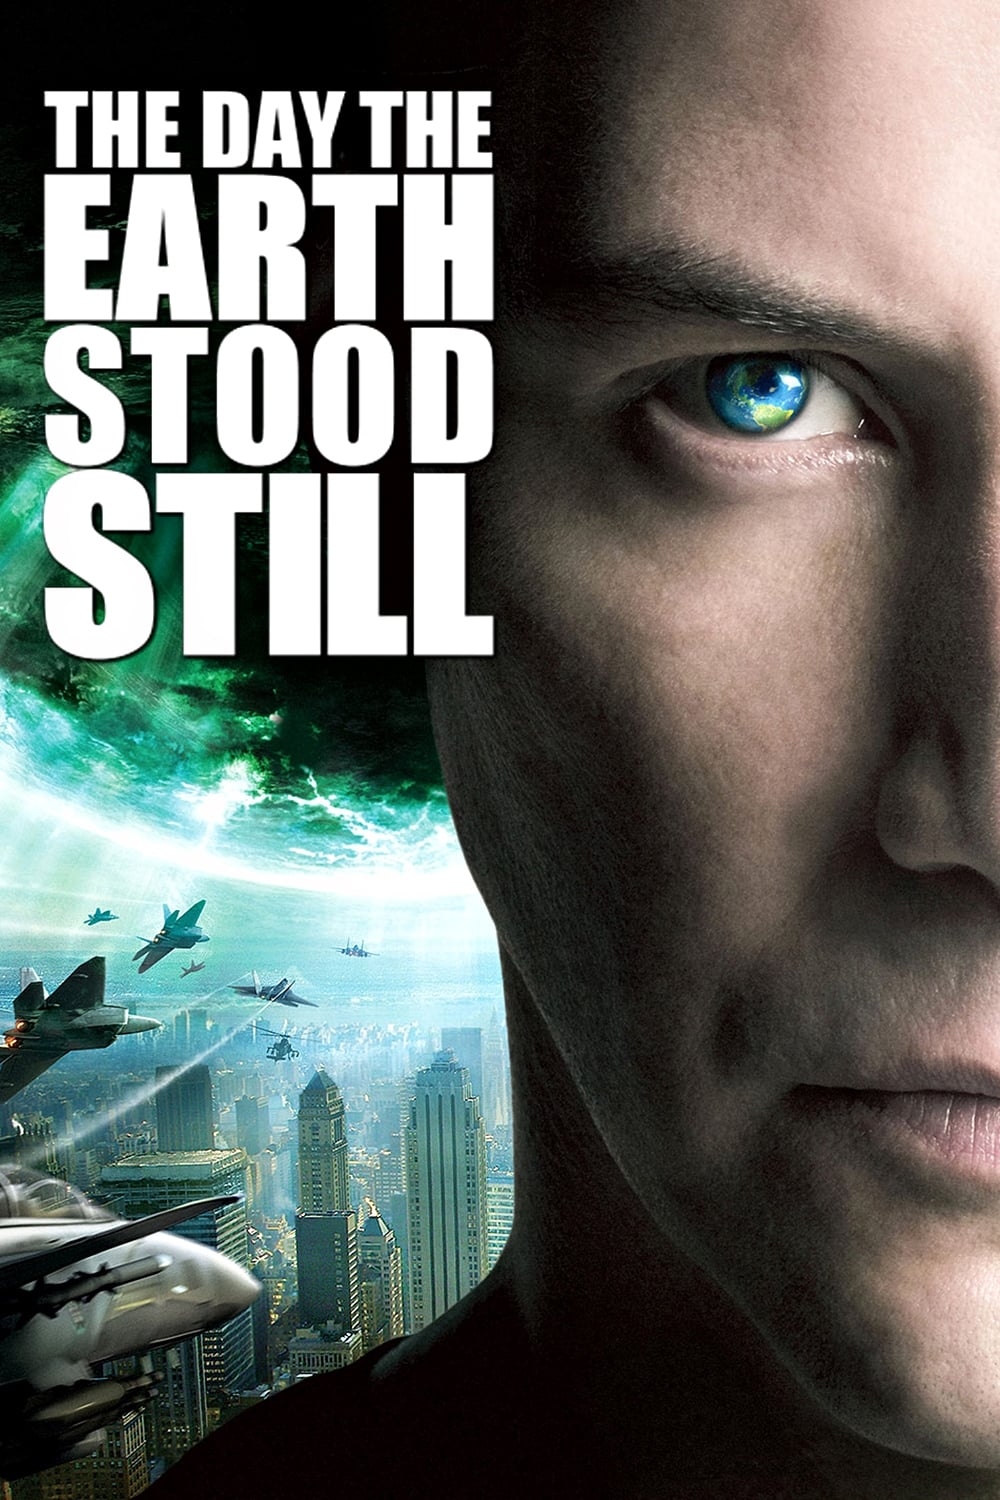 Ultimátum a la Tierra (2008)